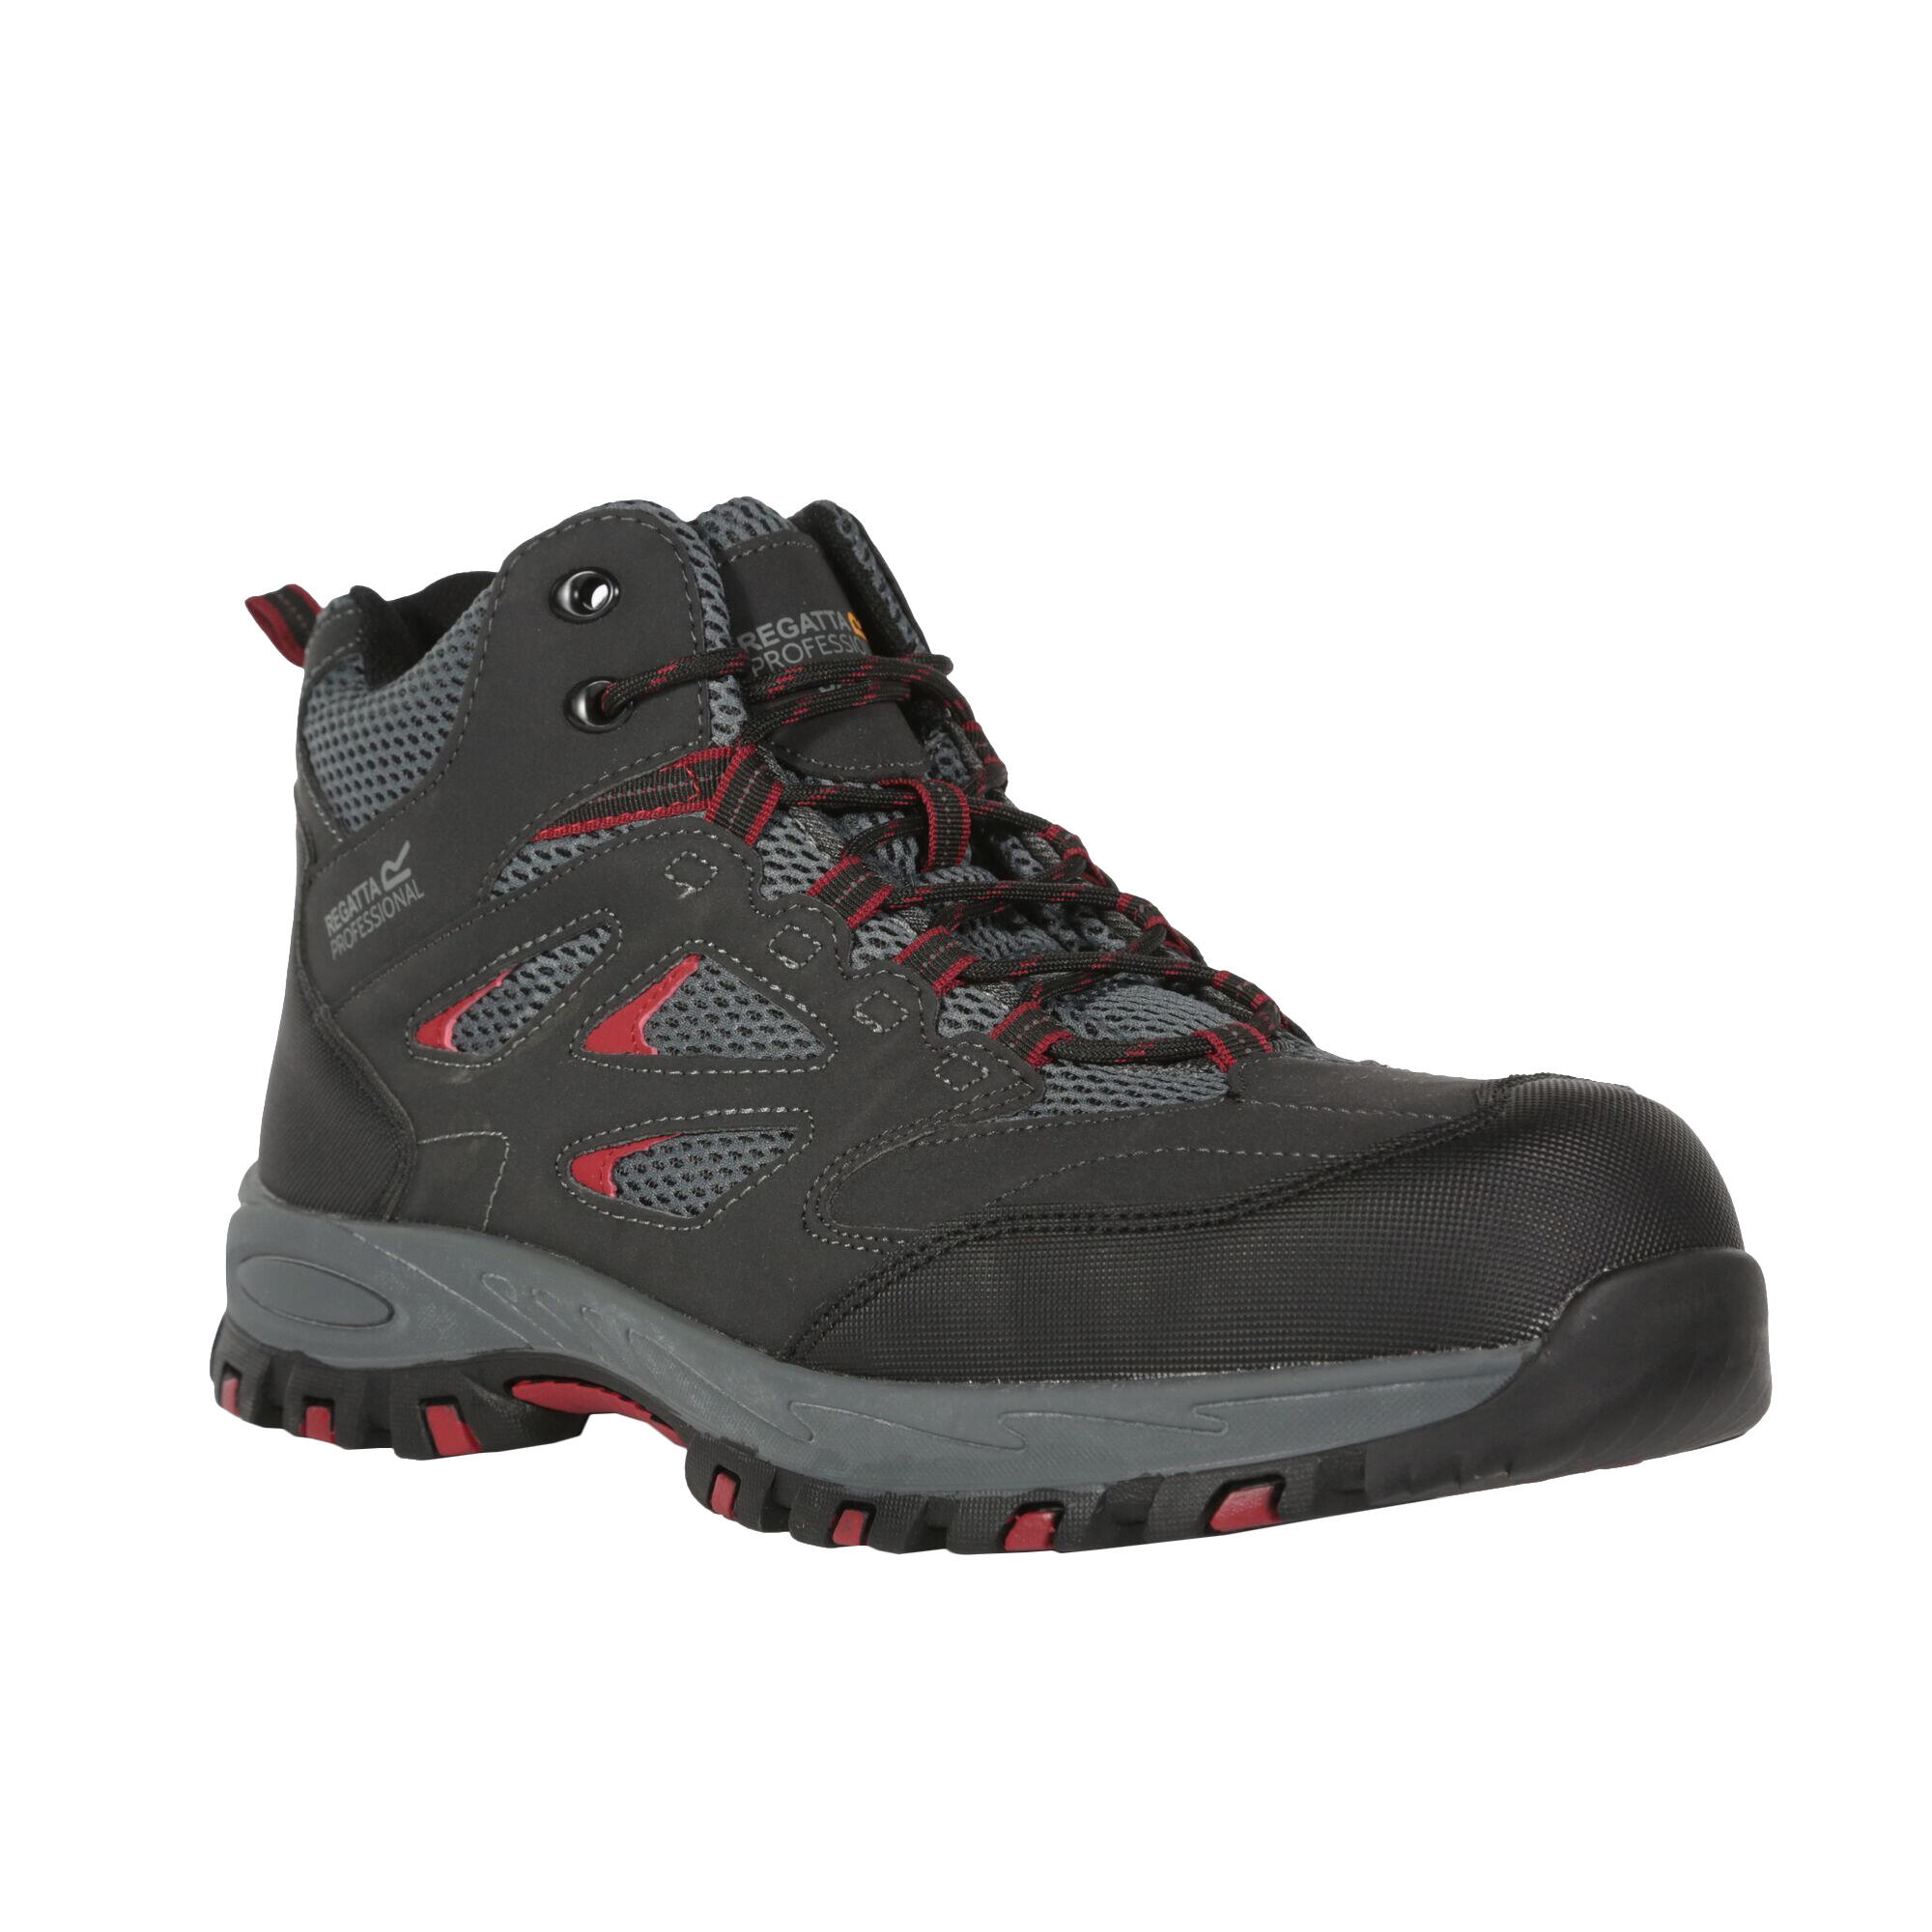 REGATTA Mens Mudstone Safety Boots (Ash/Rio Red)